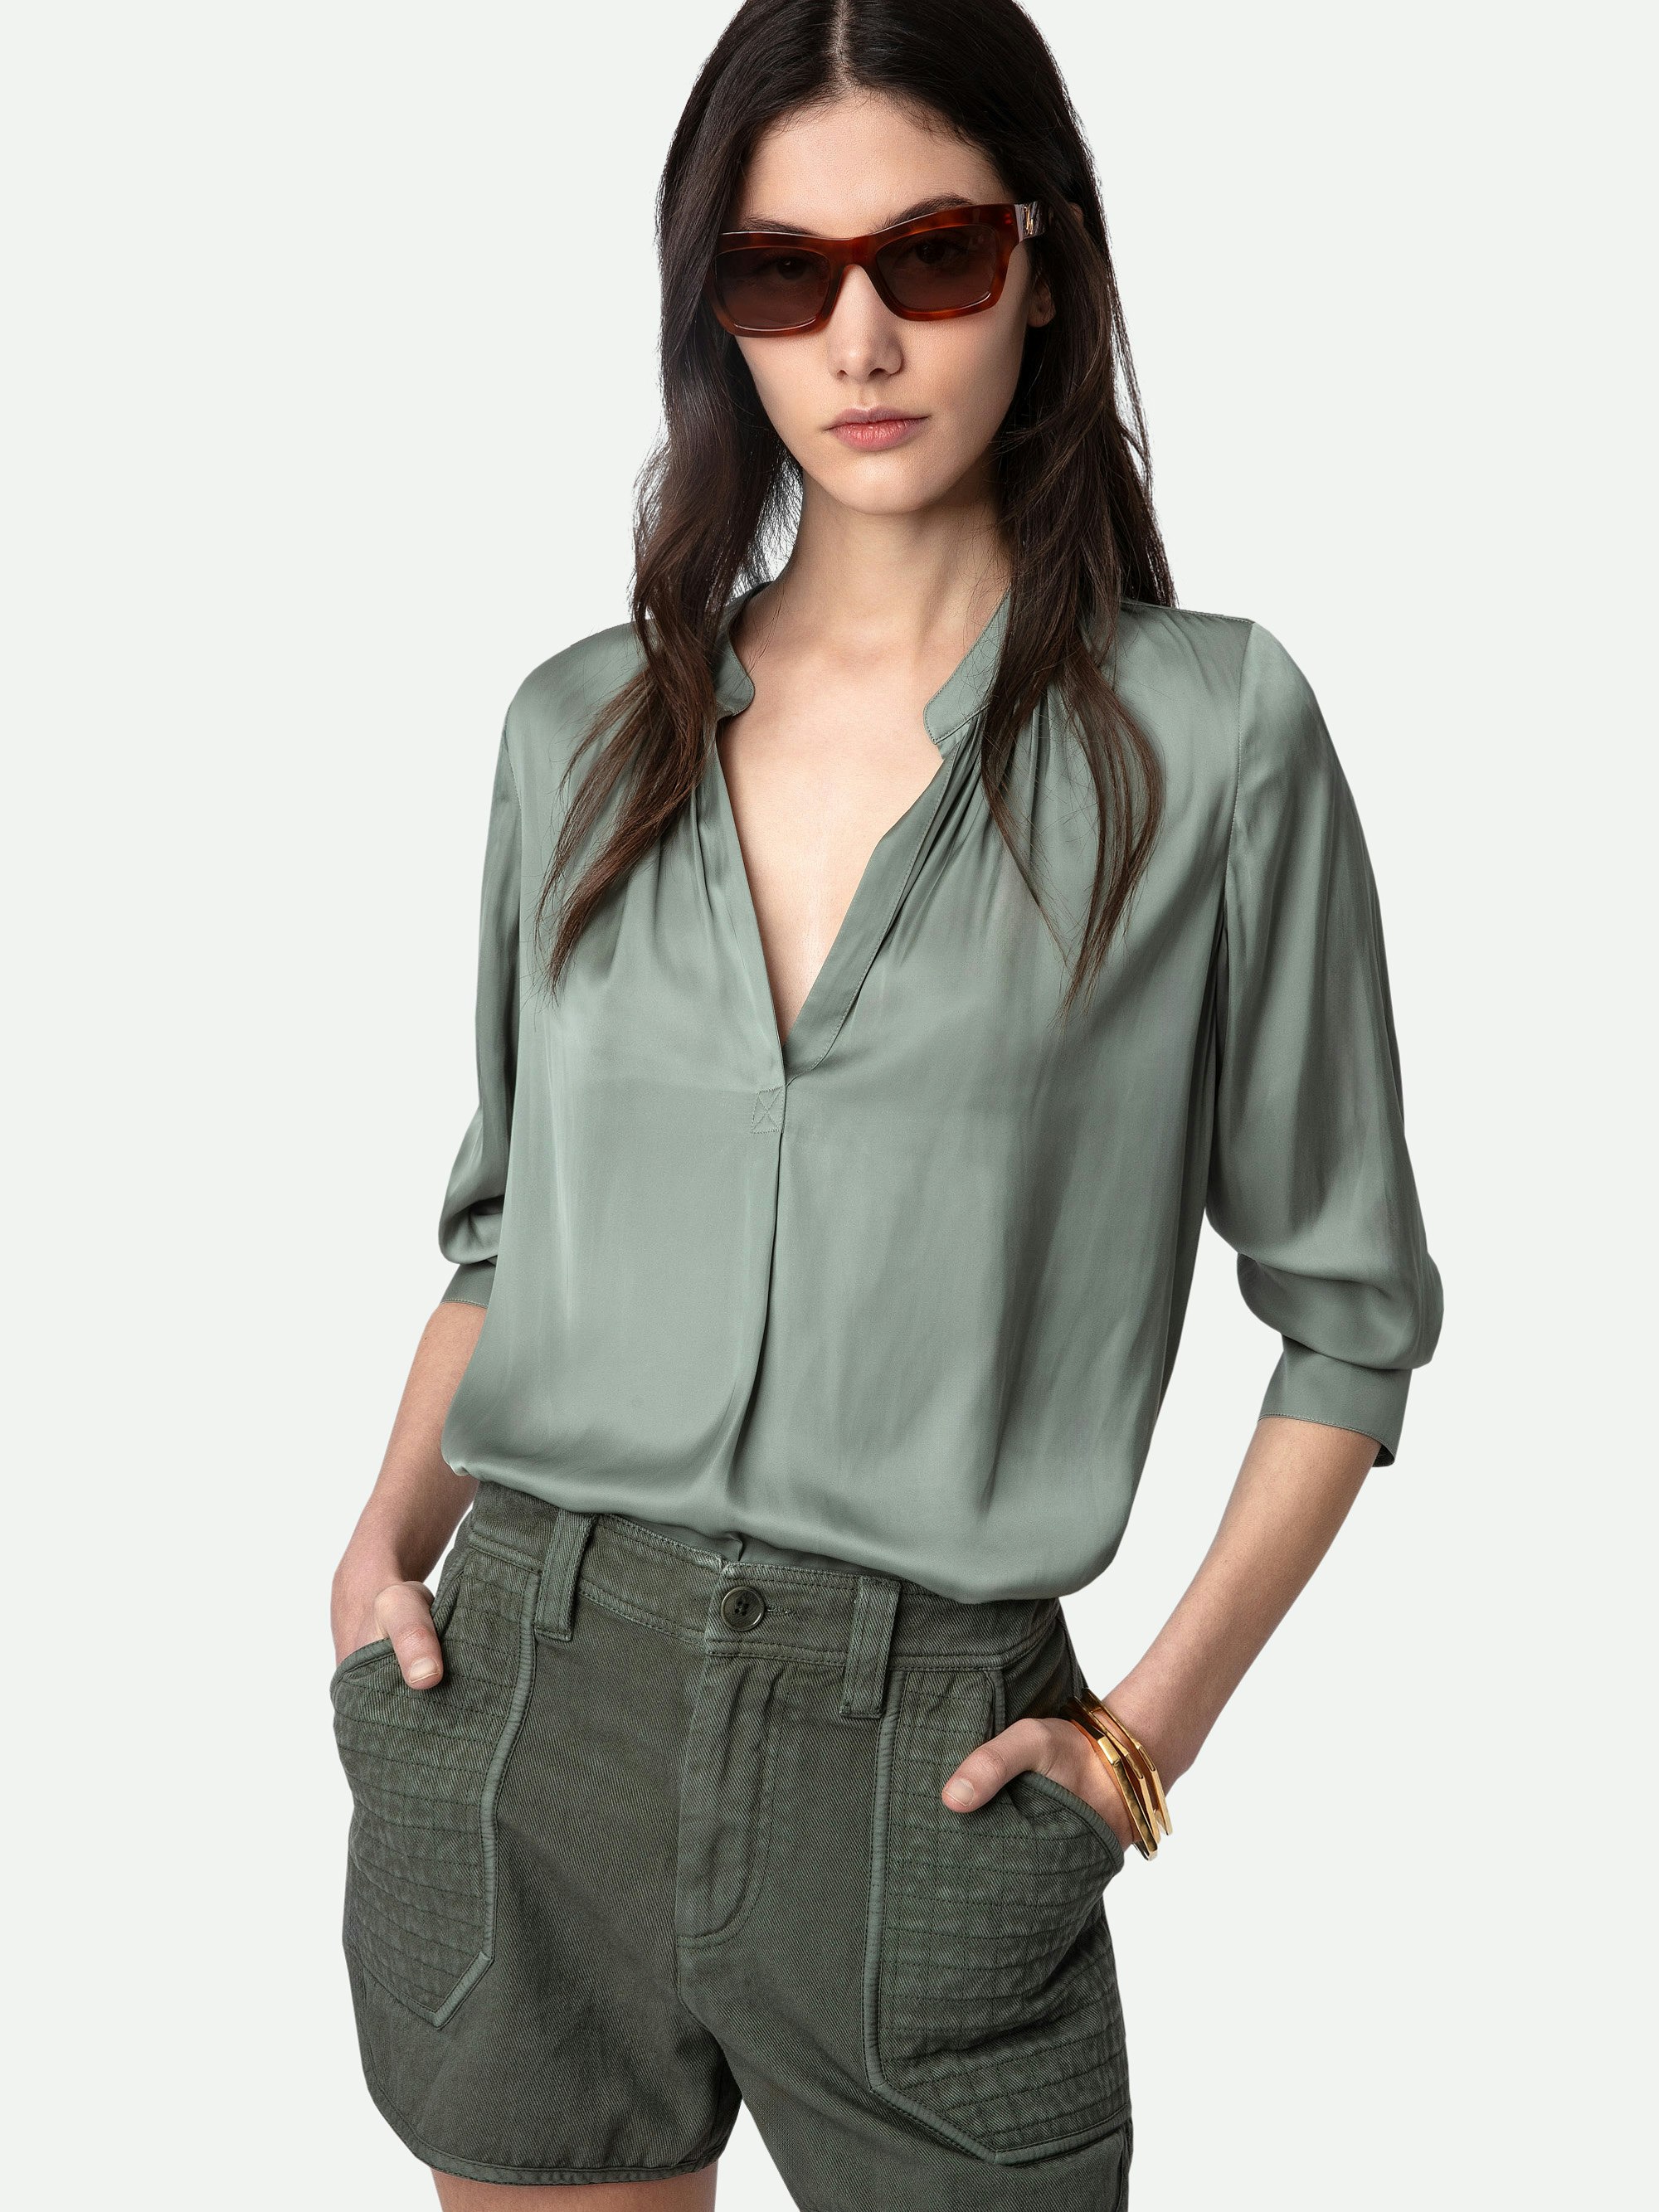 Blusa de Satén Tink - Blusa de satén en color gris con cuello abierto, mangas largas y detalles fruncidos.